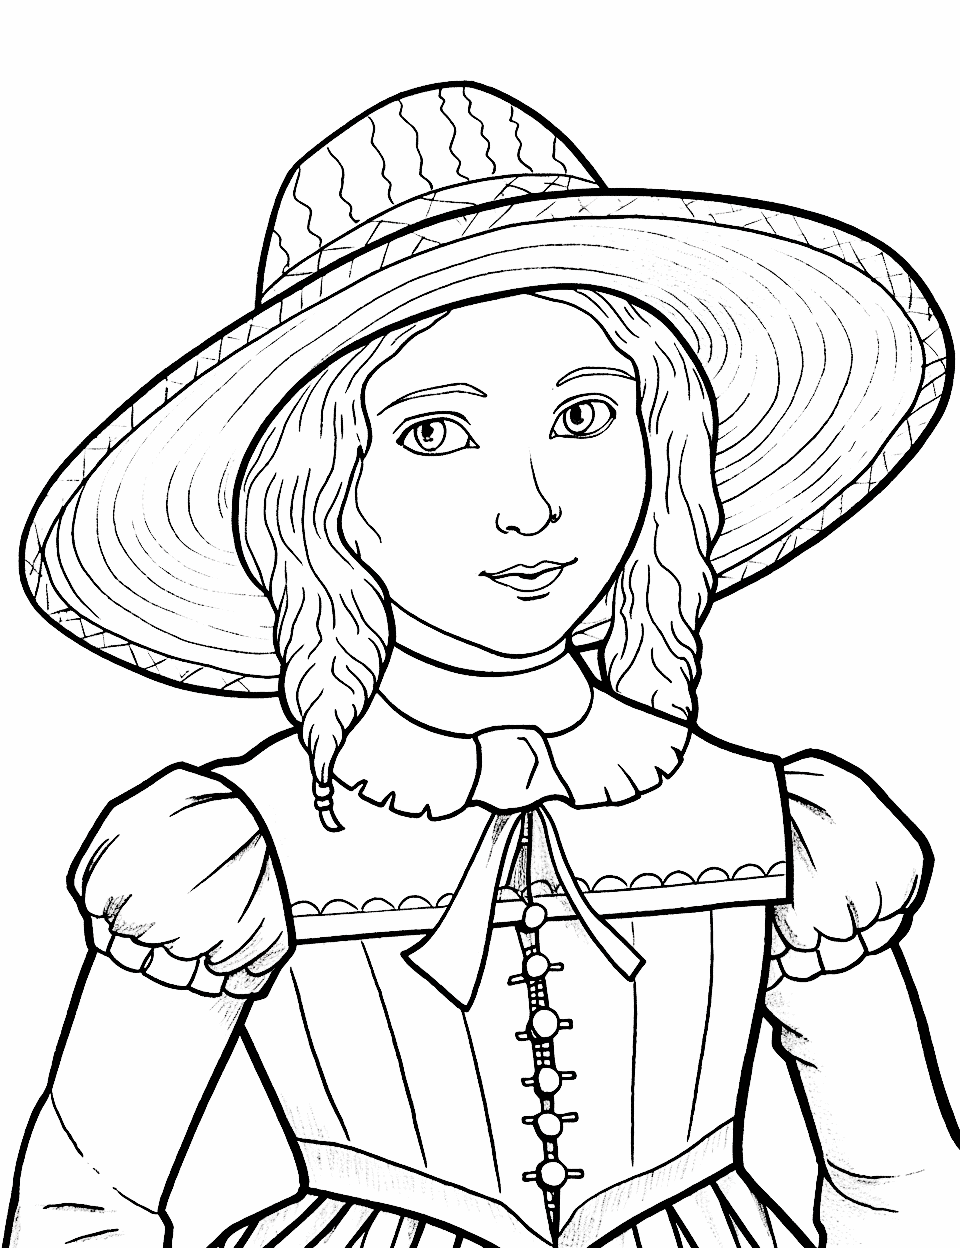 Difficult Detailed Pilgrim Portrait Thanksgiving Coloring Page - A complex portrait of a pilgrim for older children.